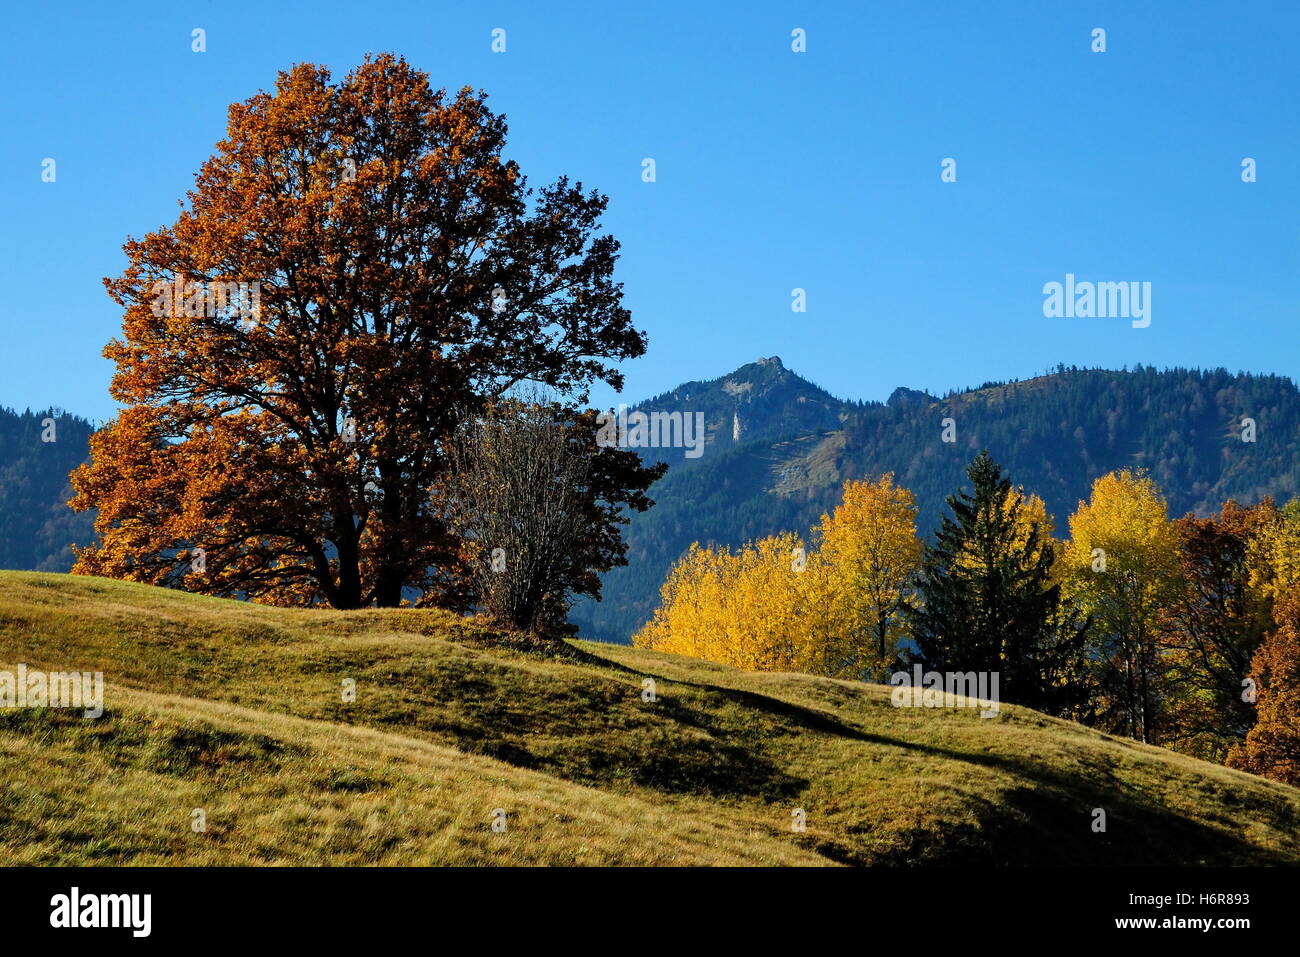 Baum Bäume Alpen Laubbäume oben von der Bergnatur fallen Herbst Baum Bäume Berge verläßt braun bräunlich Brünette Stockfoto